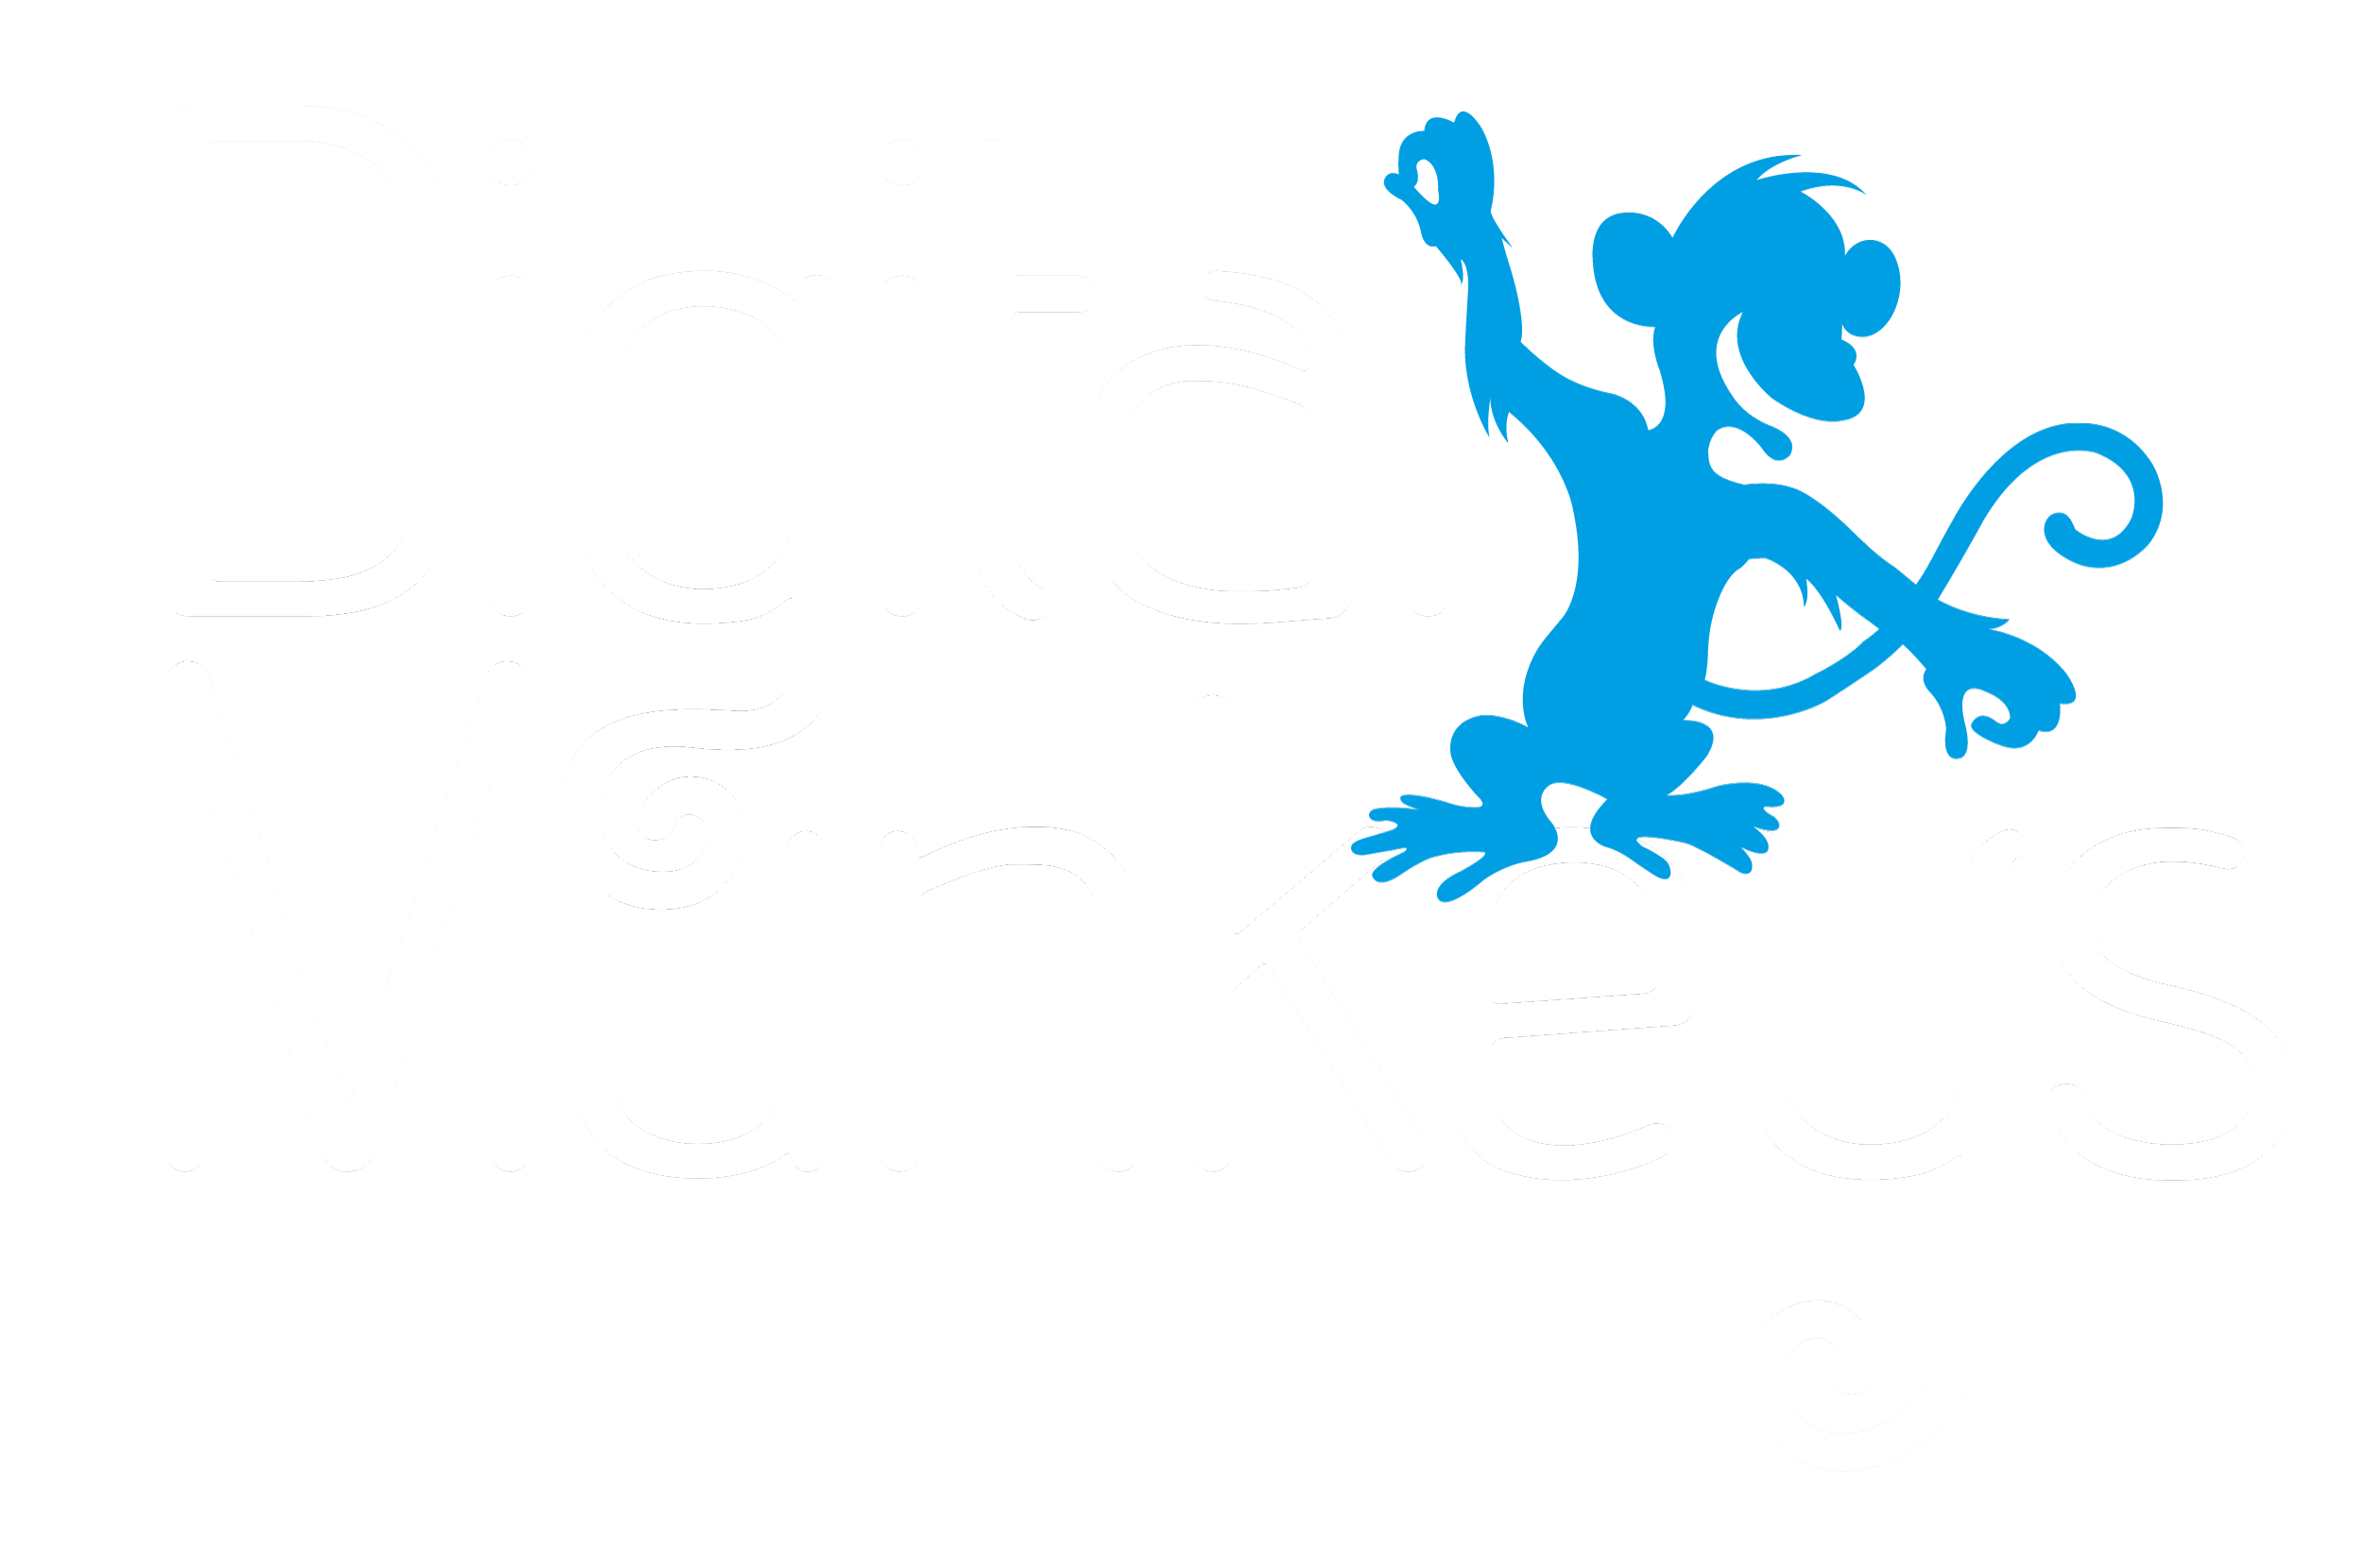 Digital Munkeys Installations Ltd